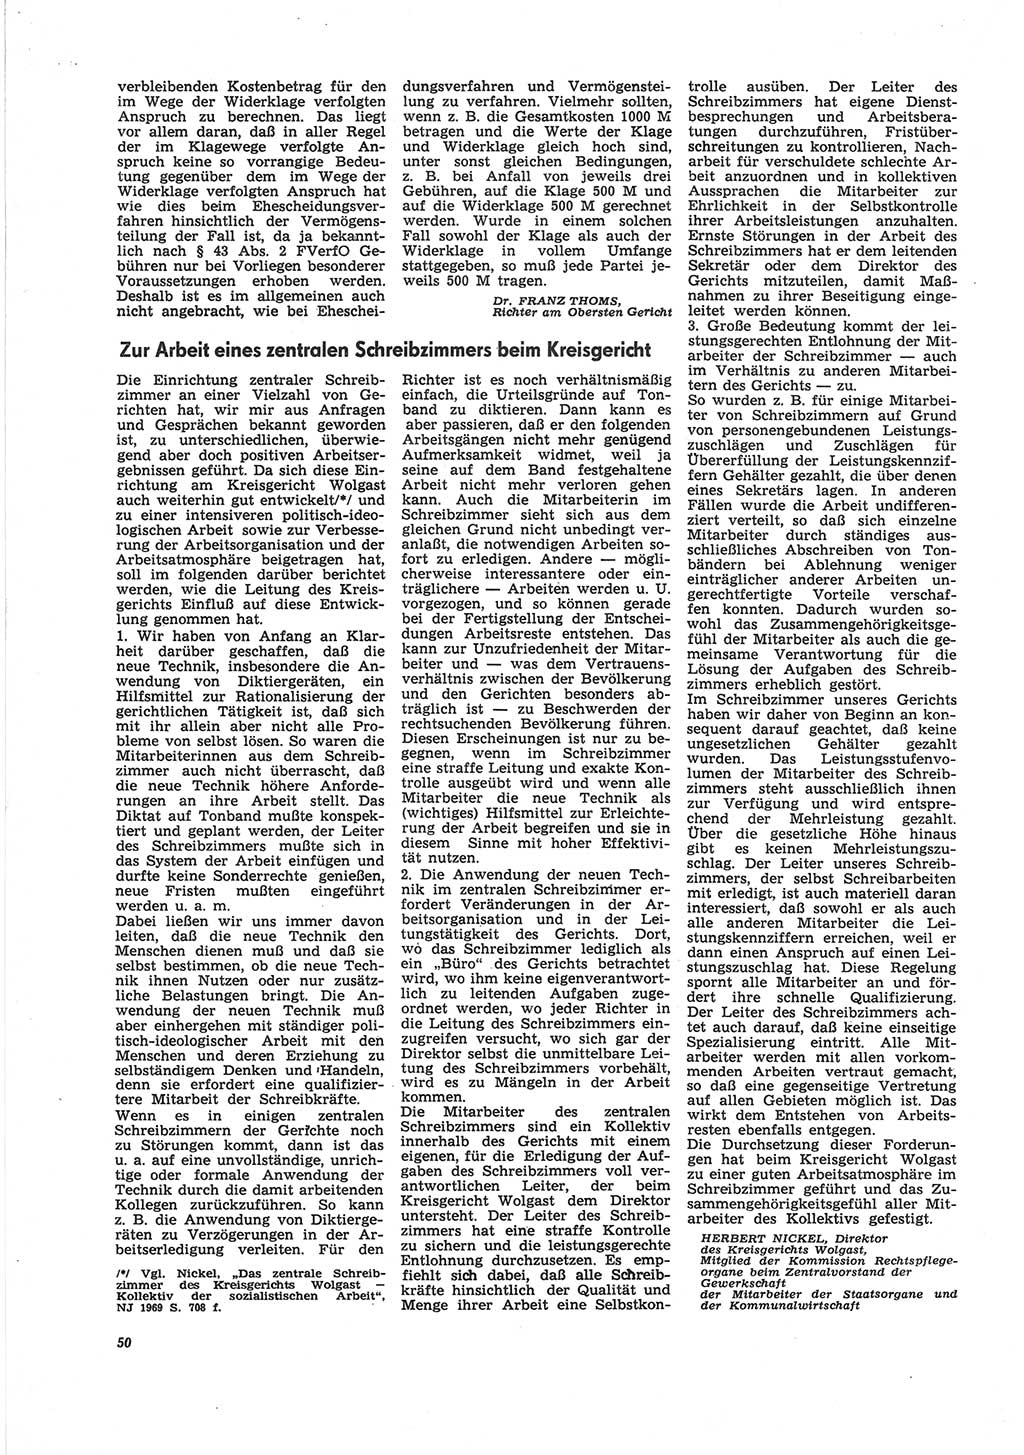 Neue Justiz (NJ), Zeitschrift für Recht und Rechtswissenschaft [Deutsche Demokratische Republik (DDR)], 25. Jahrgang 1971, Seite 50 (NJ DDR 1971, S. 50)